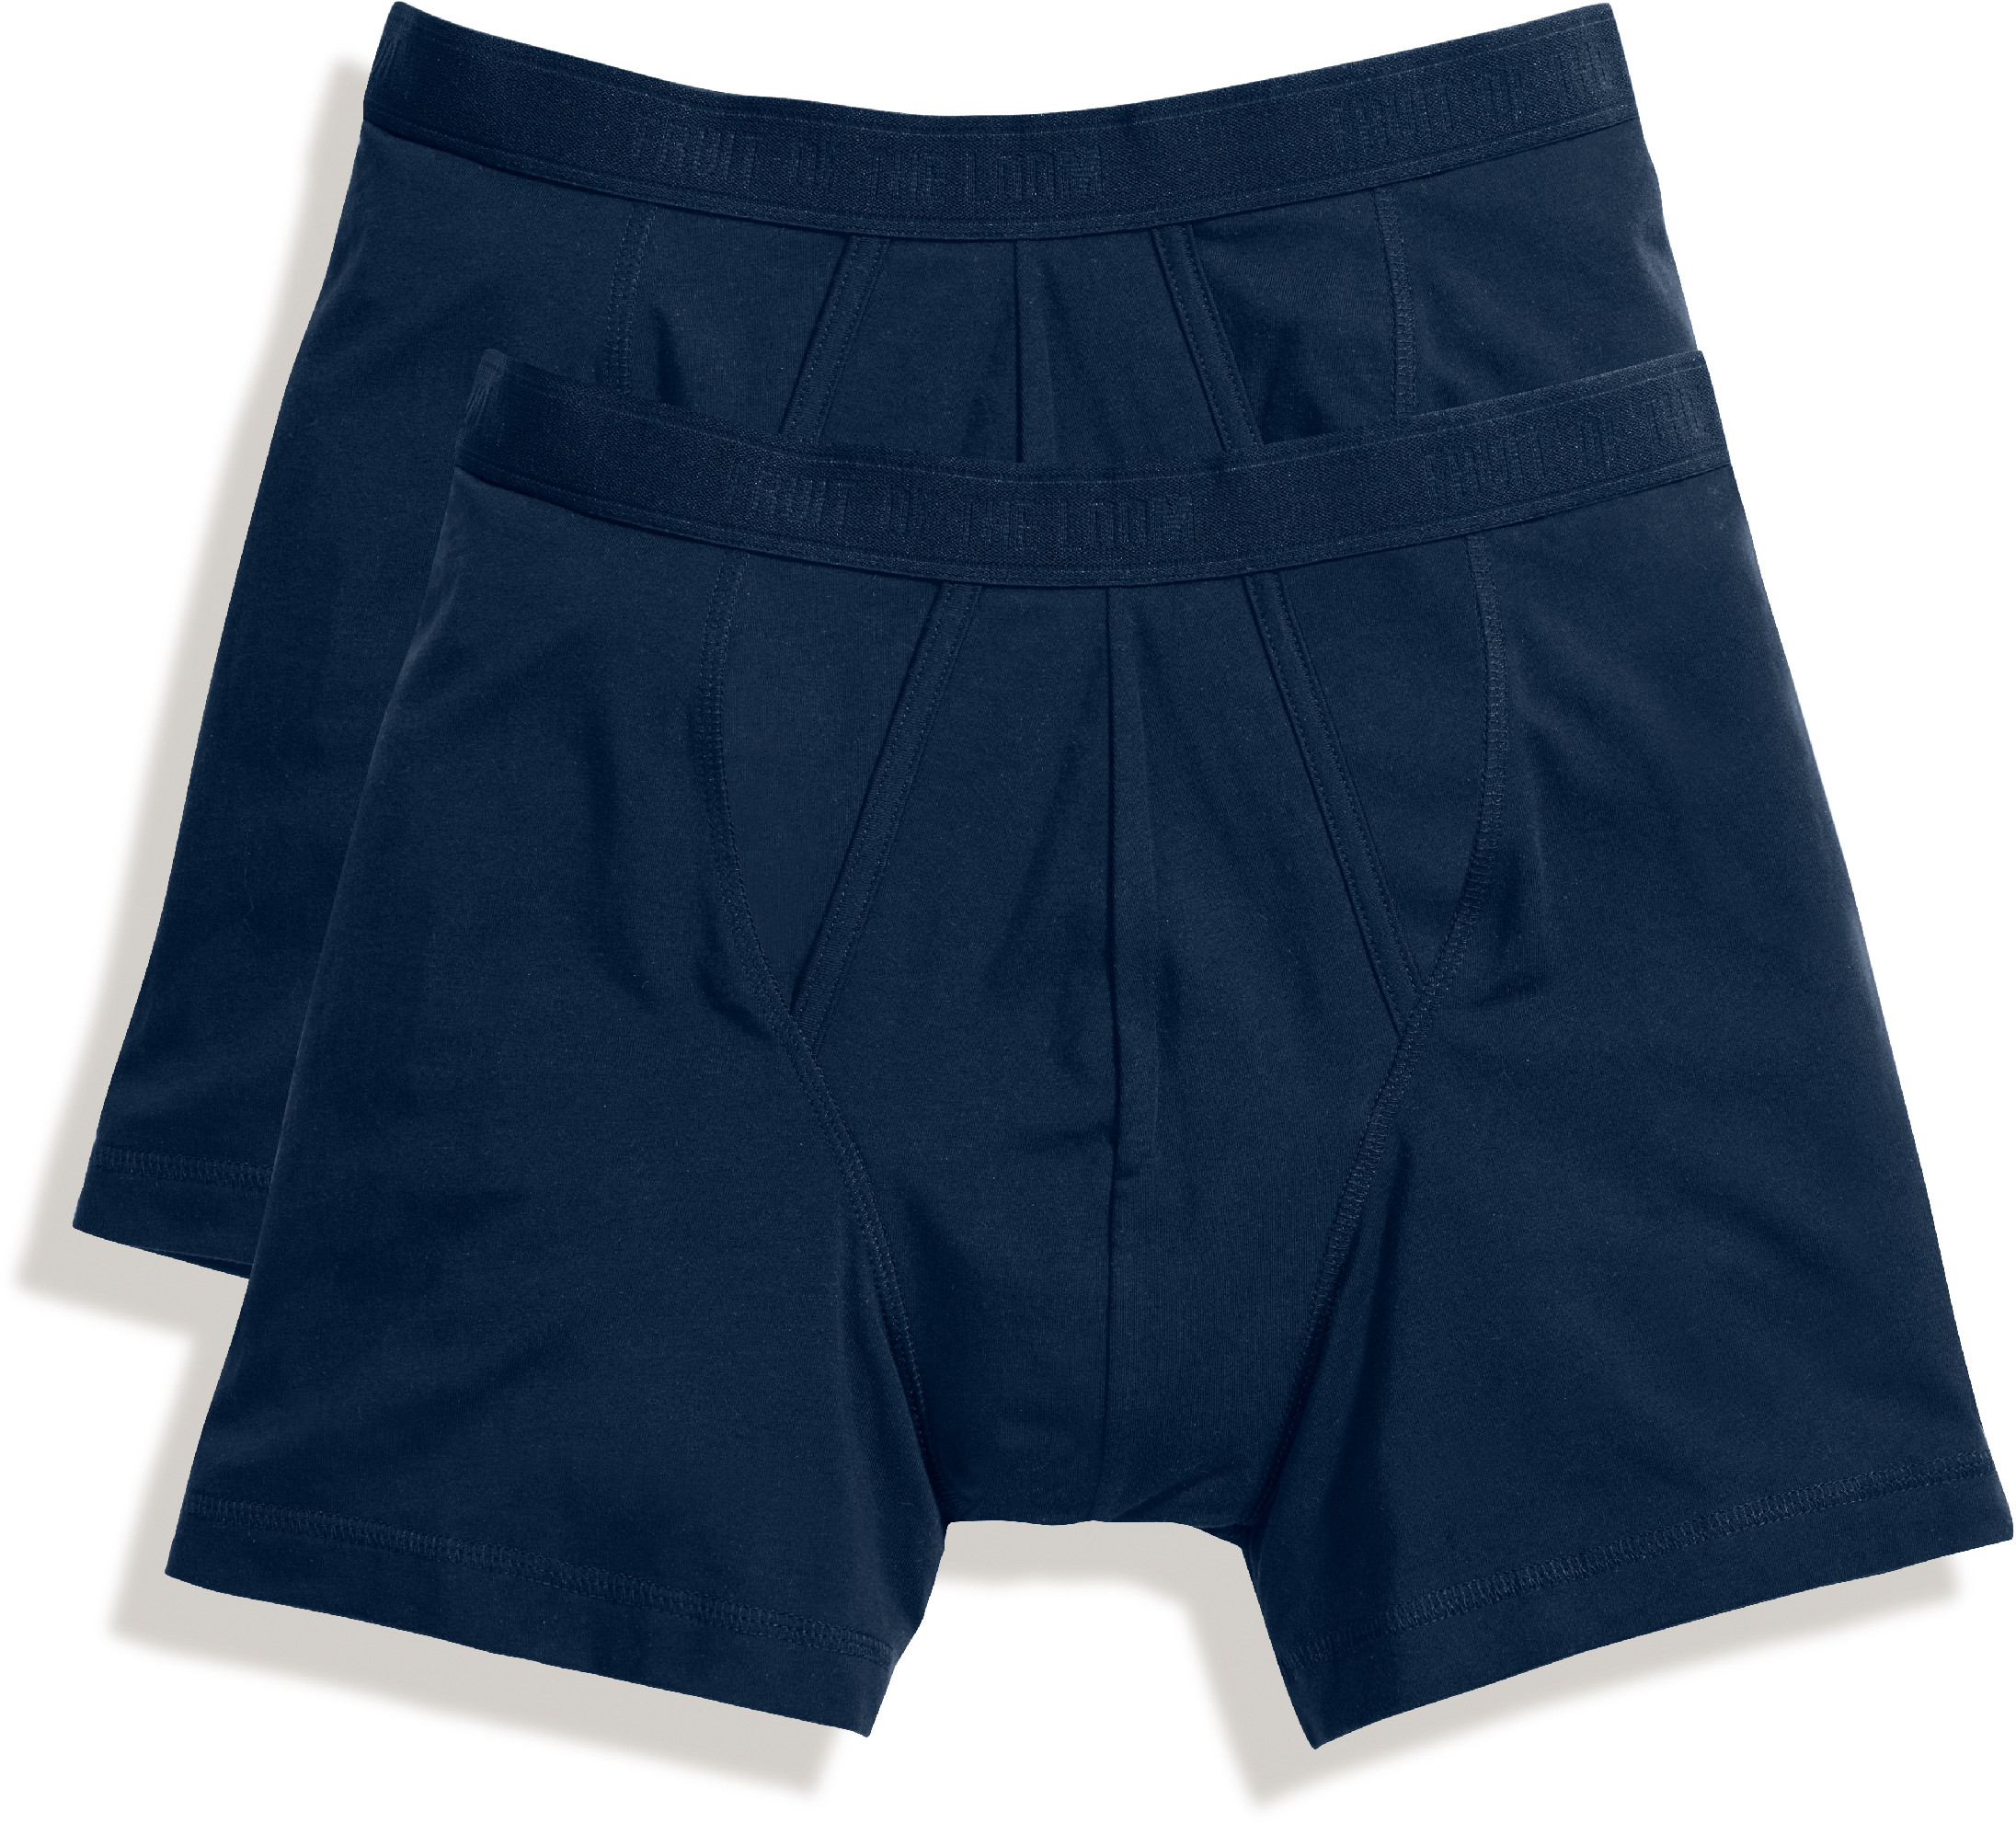 Pánské boxerky, balení po 2 ks Barva: underwear navy/underwear navy, Velikost: XL